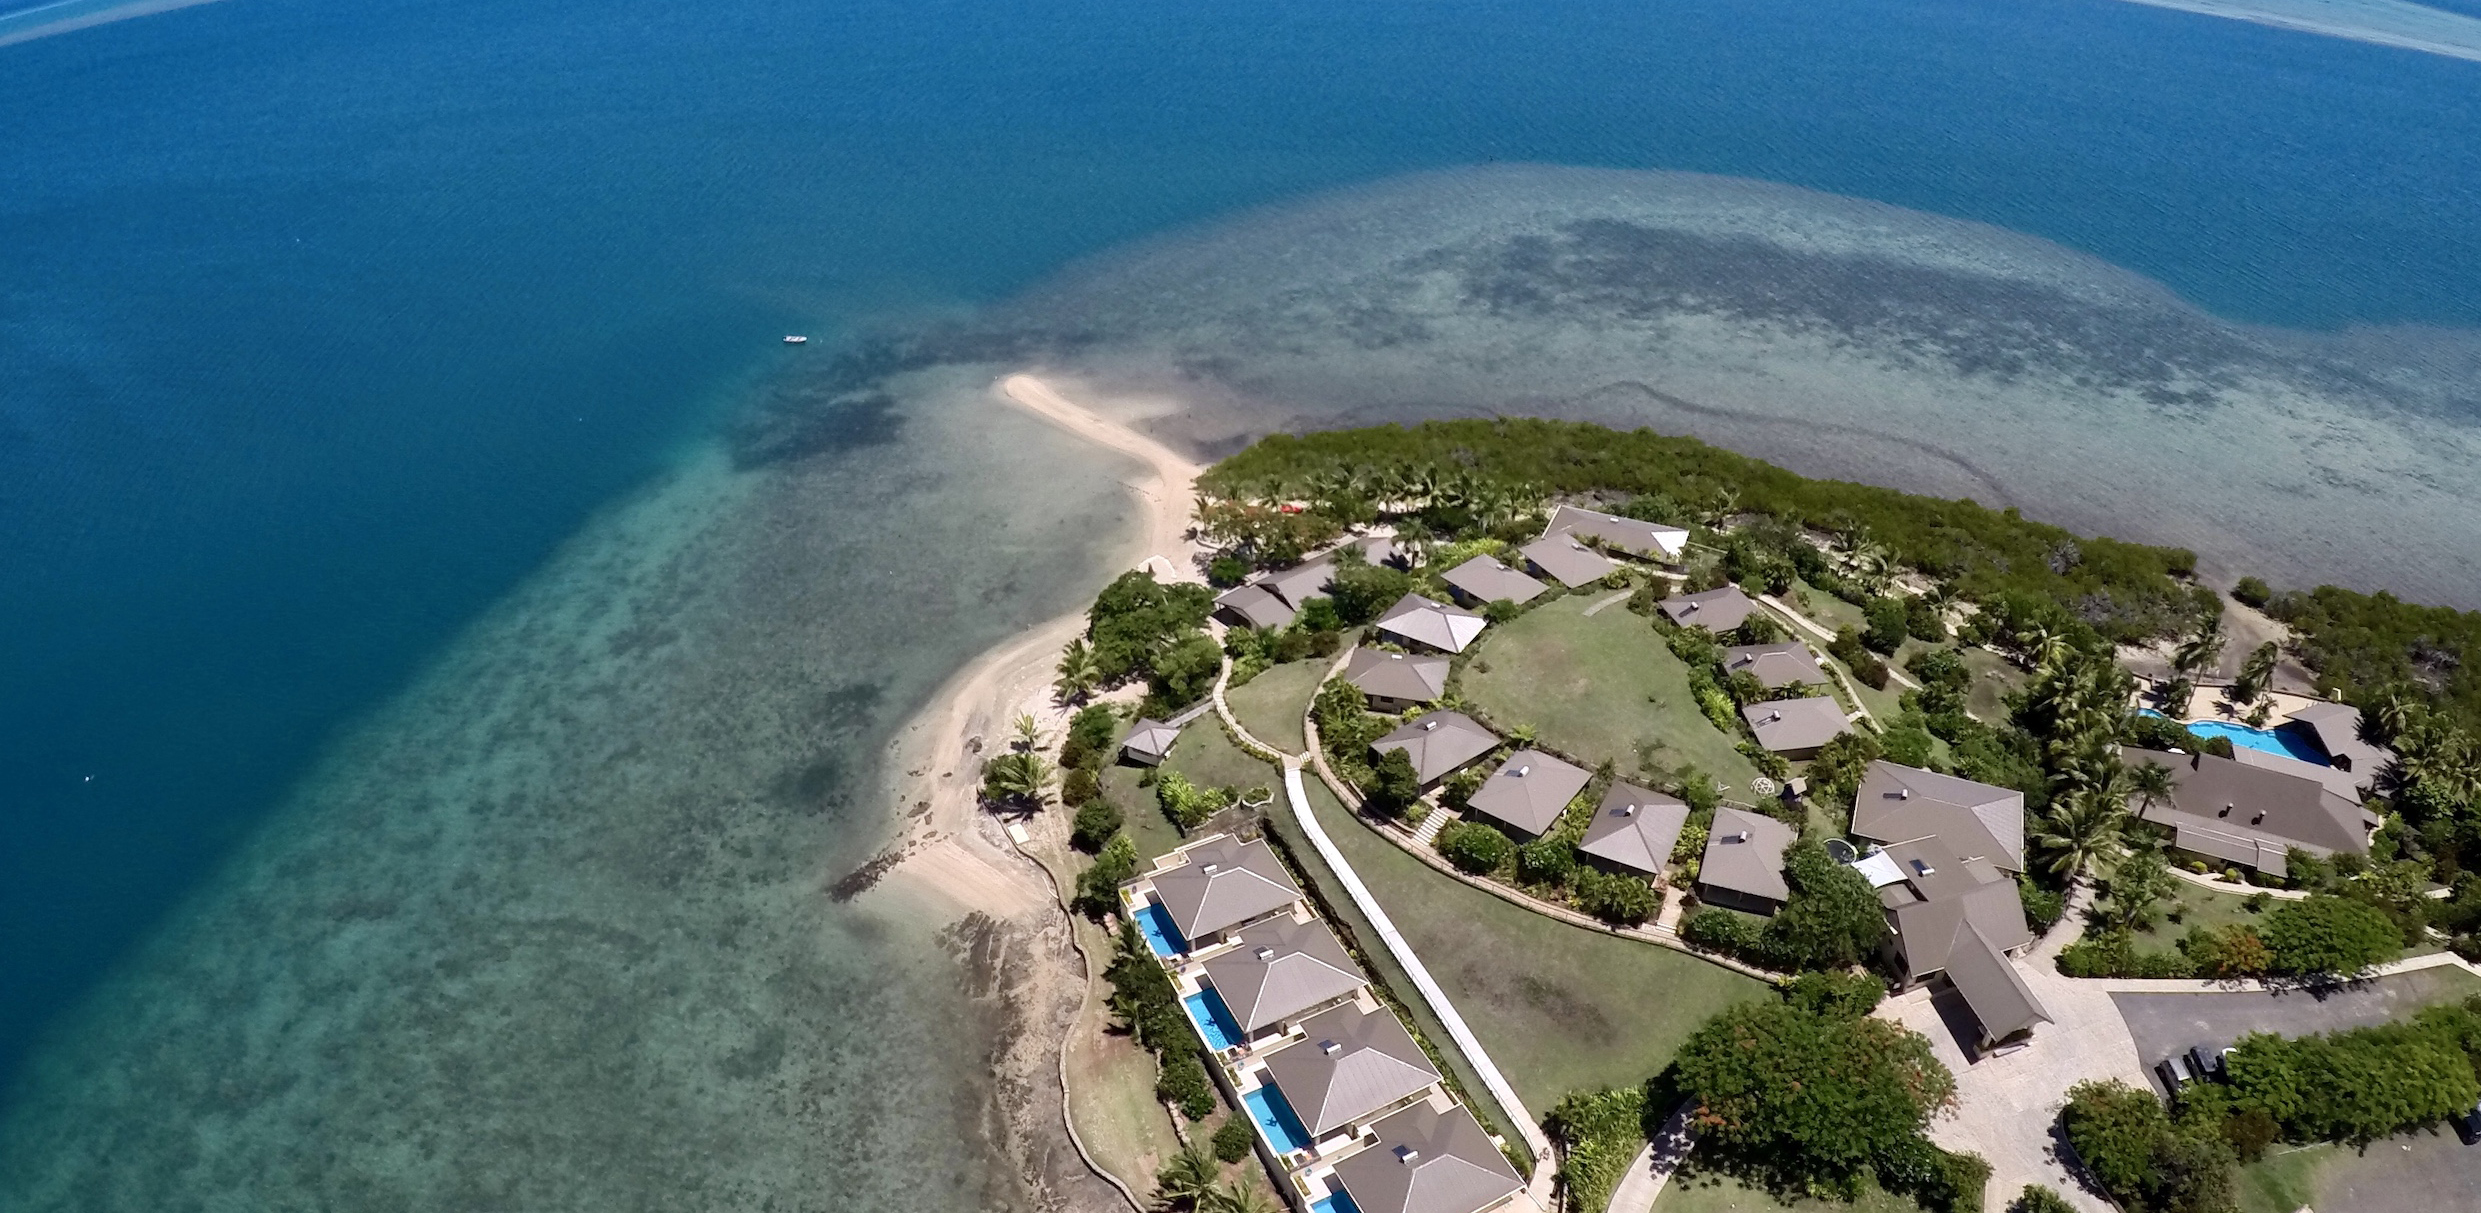 VoliVoli Resort, Fiji